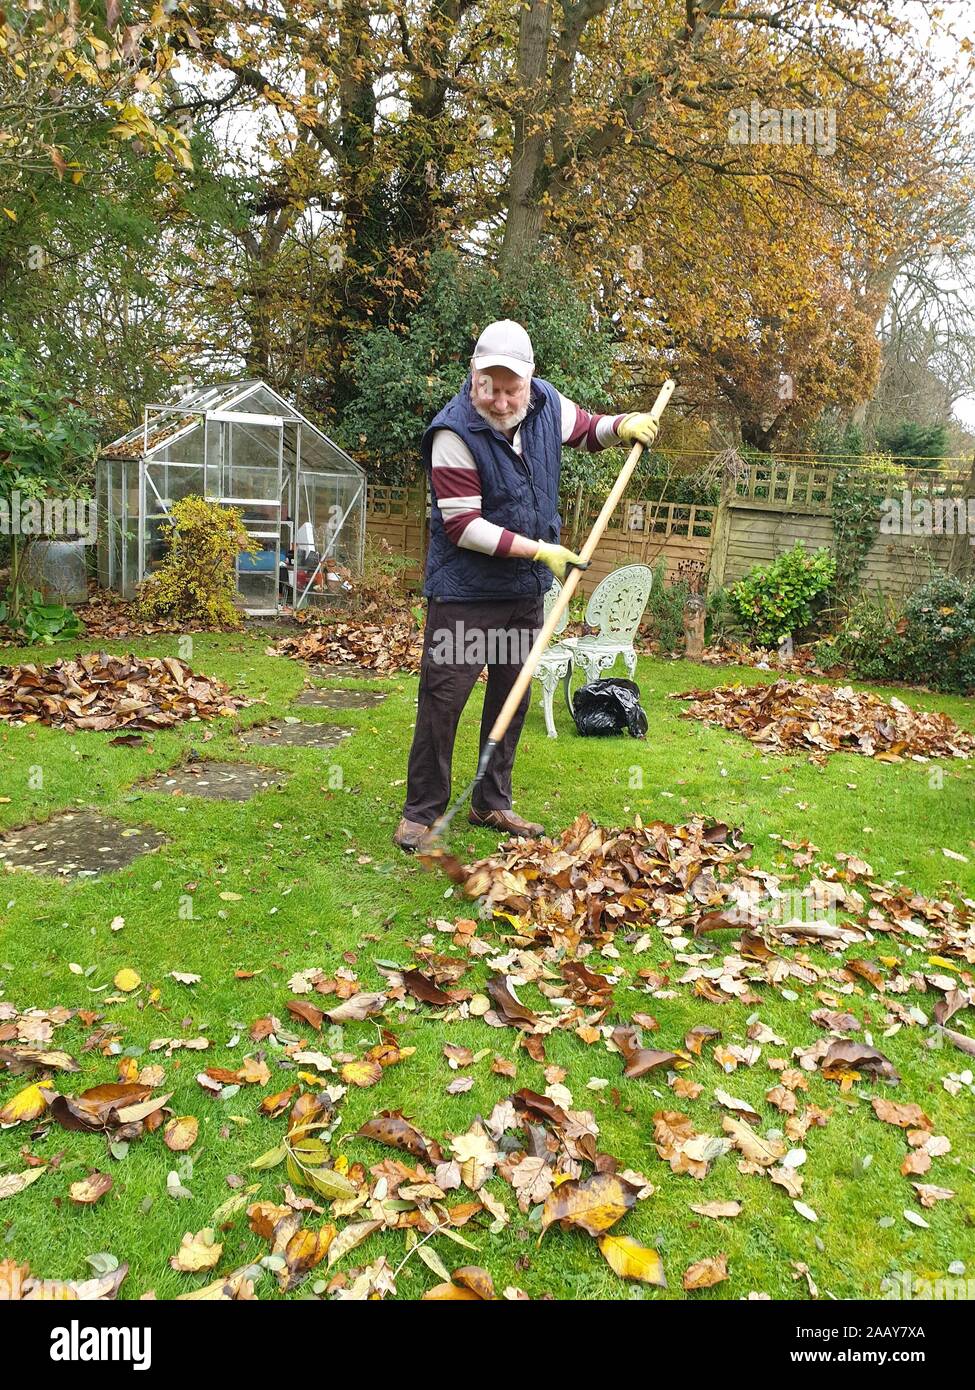 Man raking leaves in the garden on an autumn day Stock Photo